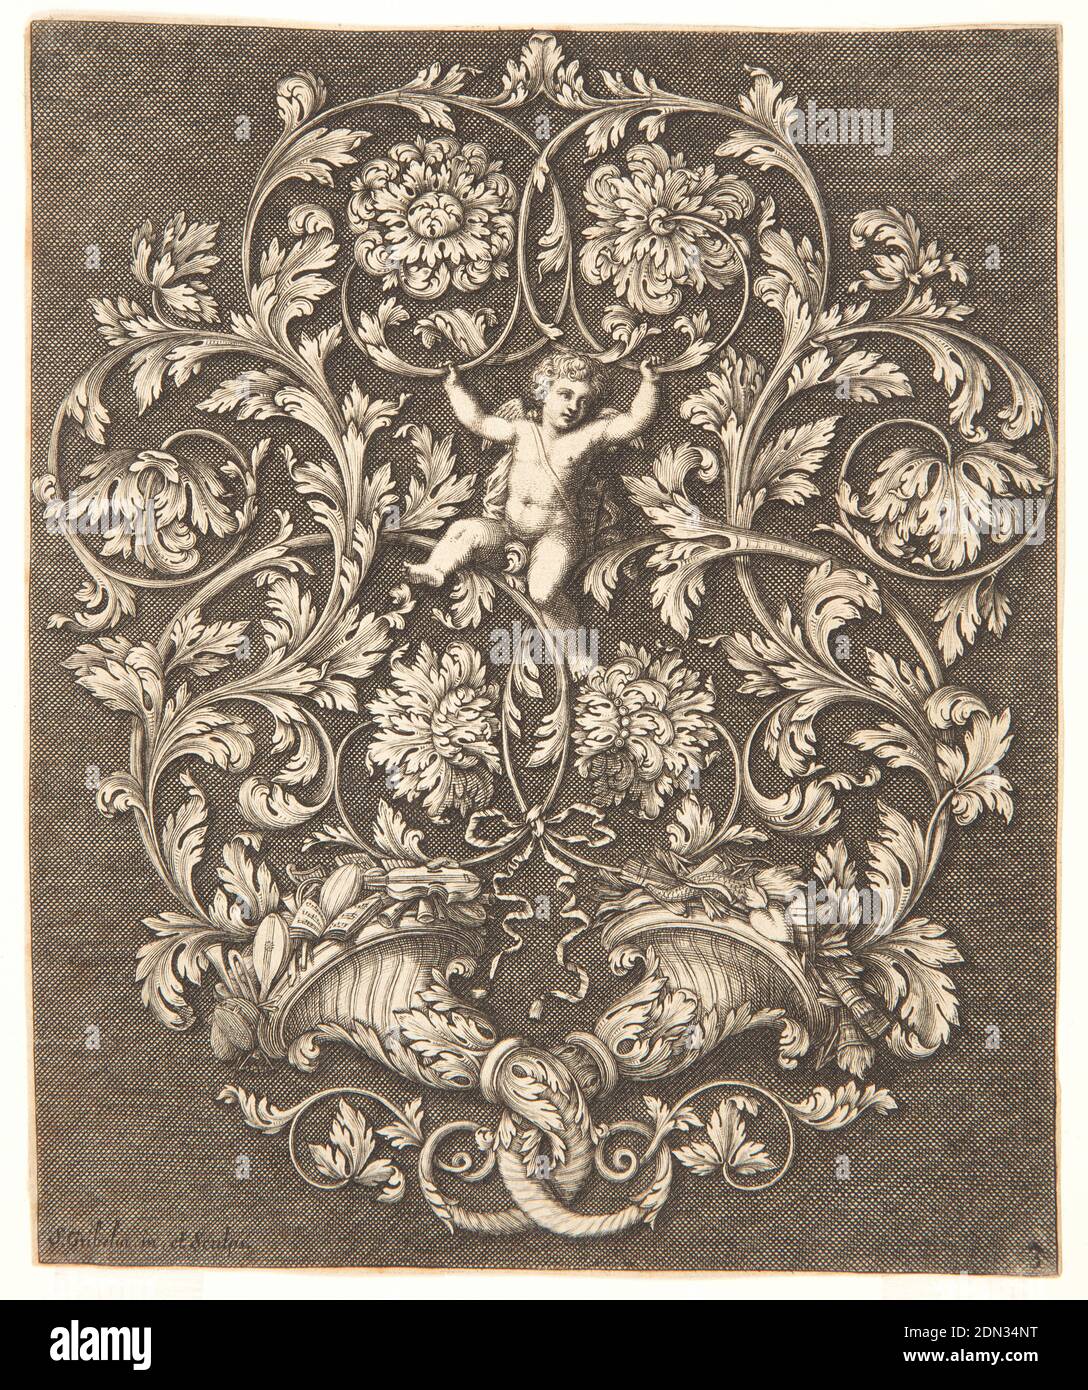 Rinceaux Diseño con Putto, placa 3, de UN Nuevo Libro de Ornaments útil para todos los artistas, Simon Gribelin II, francés, 1661 - 1733, grabado, grabado en papel blanco, Cupido es apoyado en el centro por rinceaux que surgen de dos cornucopias entrelazadas; los atributos de la música están en la cornucopia izquierda, los atributos del amor en la derecha. Fondo oscuro, sombreado. Abajo a la izquierda: . Gribelin in. Et Sculpps; izquierda, 3., Francia, 1704, ornamento, impresión Foto de stock